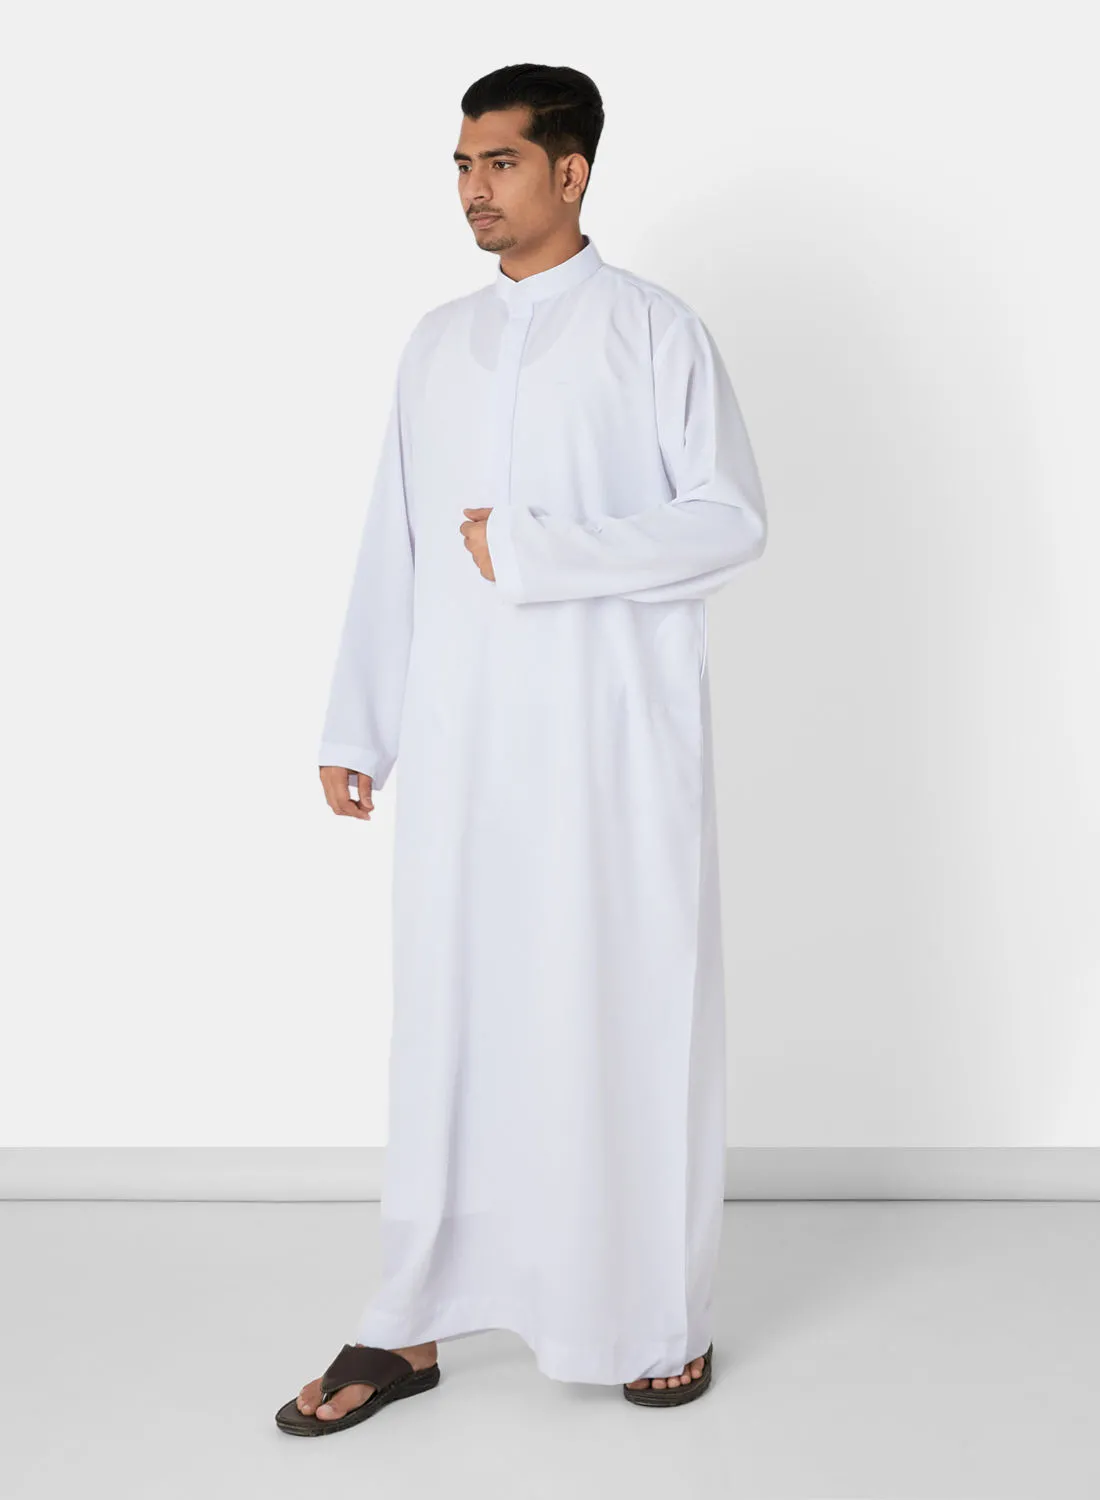 SIVVI for SAQR Premium Saudi Kandora White